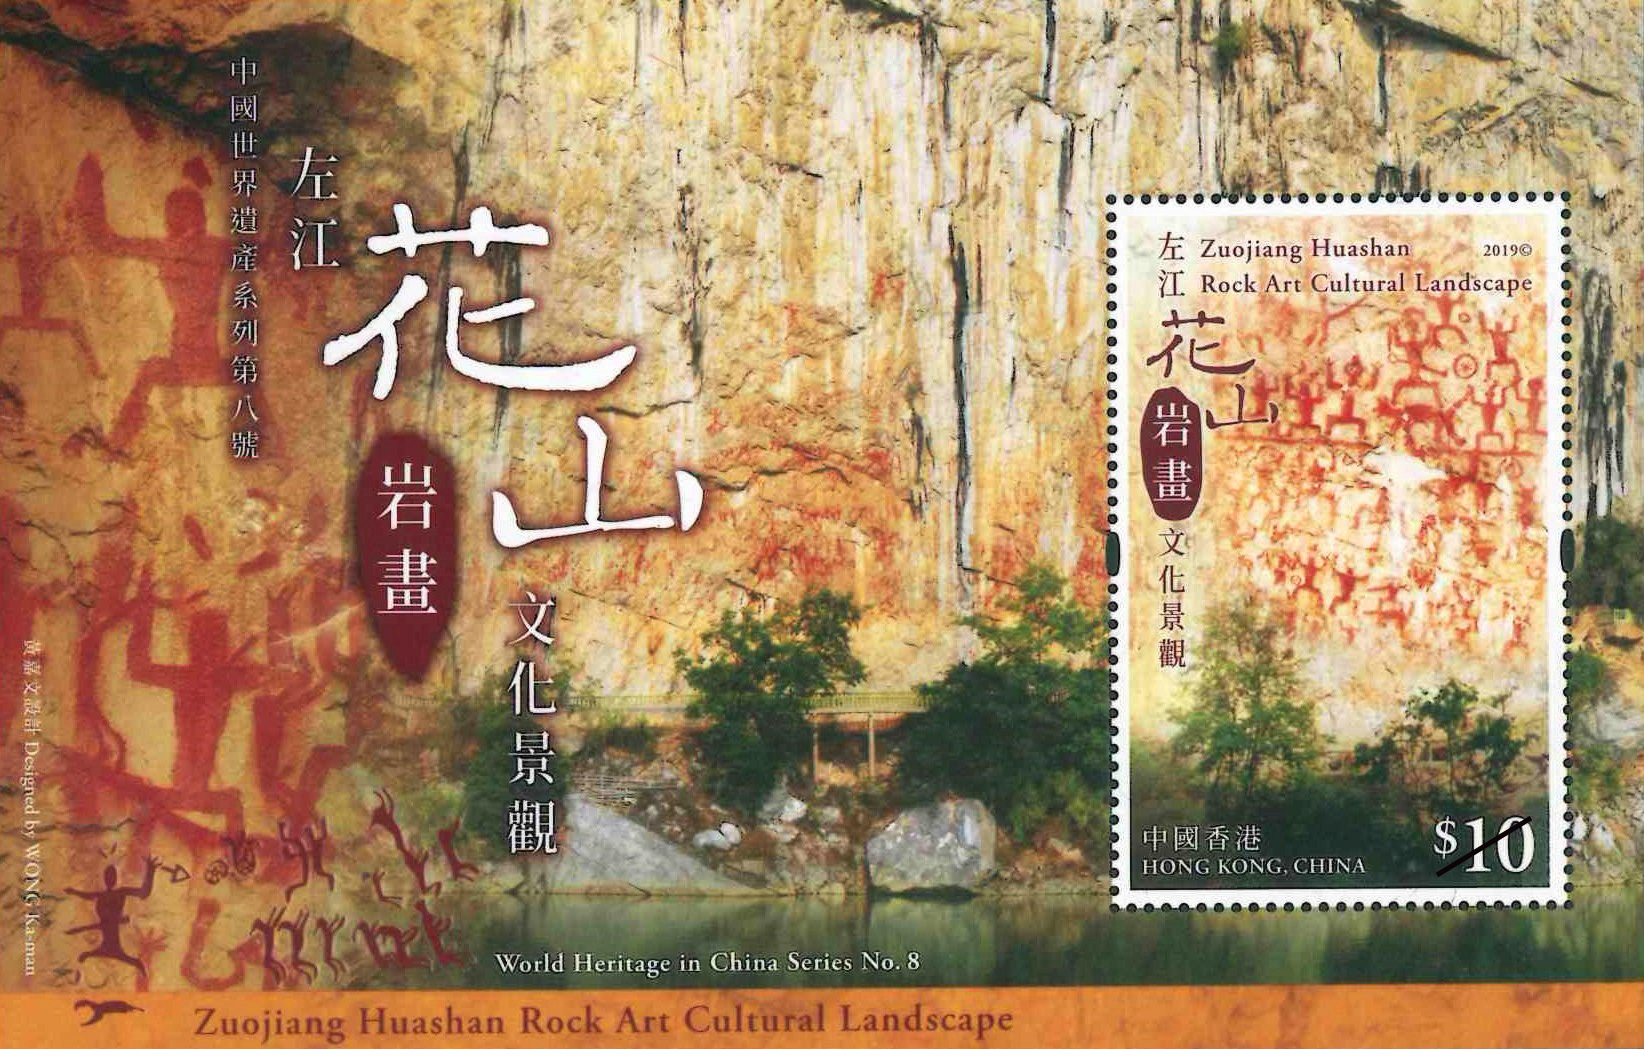 「中国世界遗产系列第八号：左江花山岩画文化景观」特别邮票